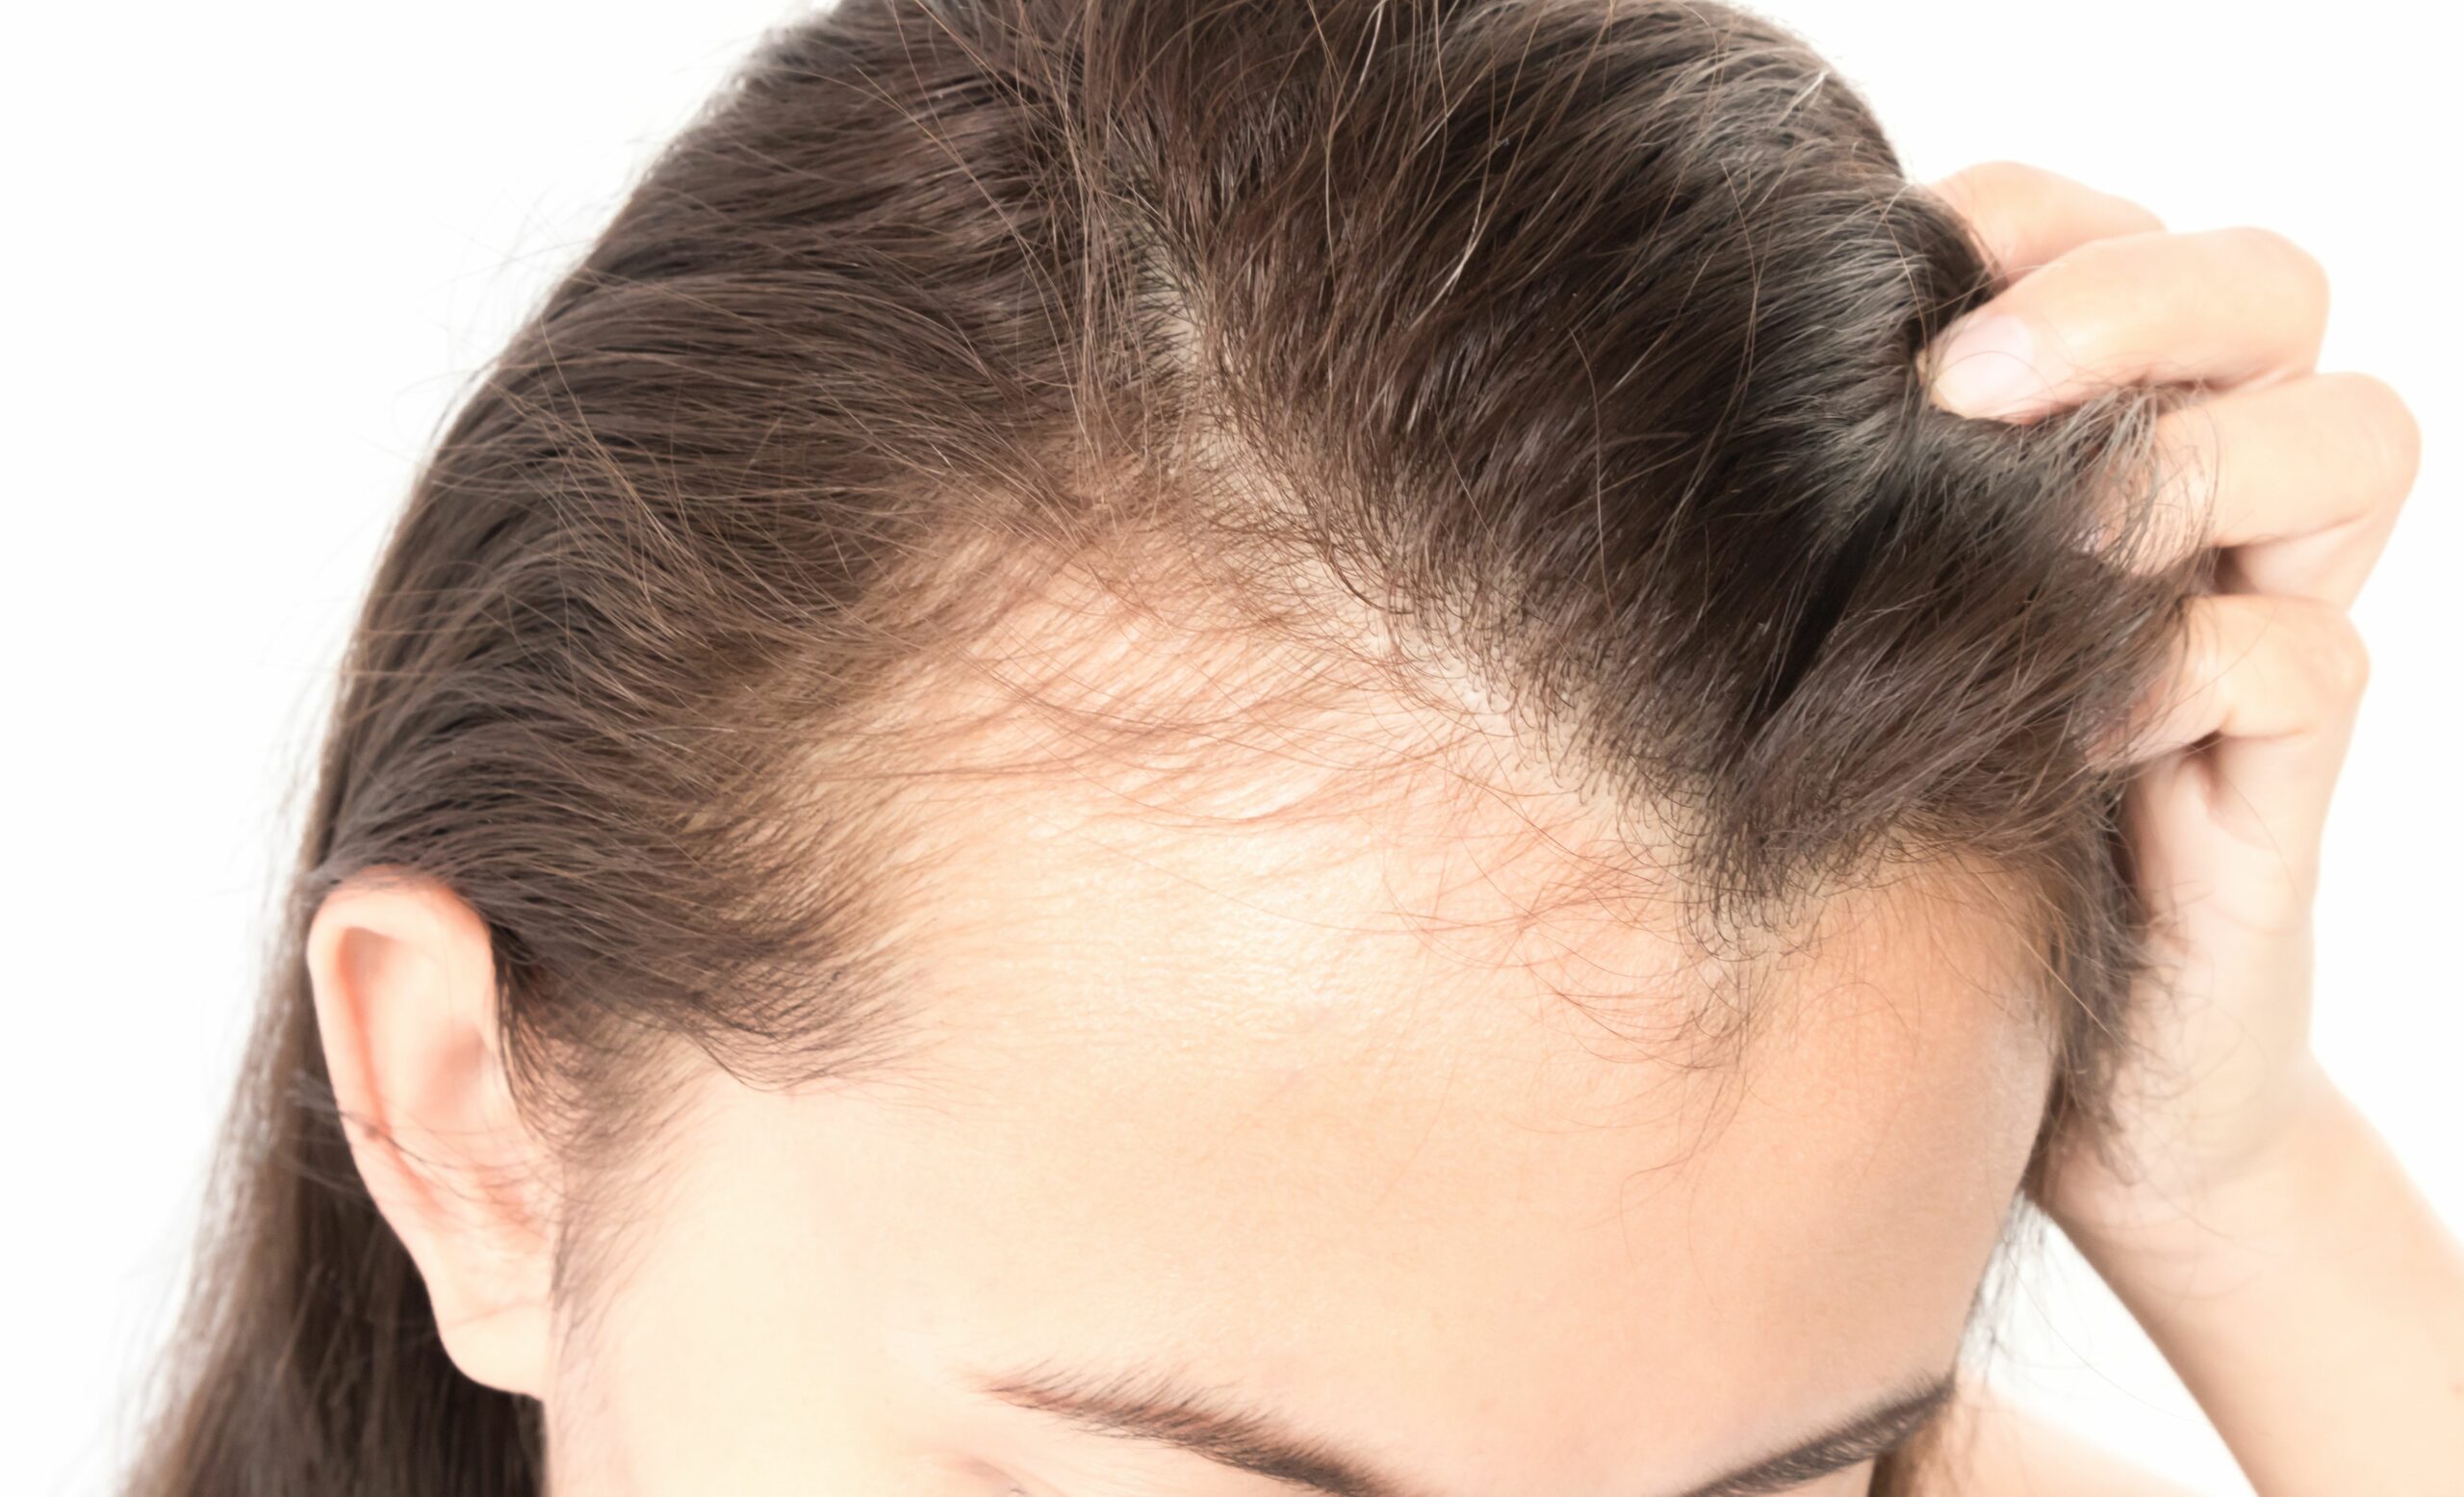 علاج تساقط الشعر طبيعيًا باستخدام الثوم والأعشاب ستجعل شعرك لامع وصحي وقوي